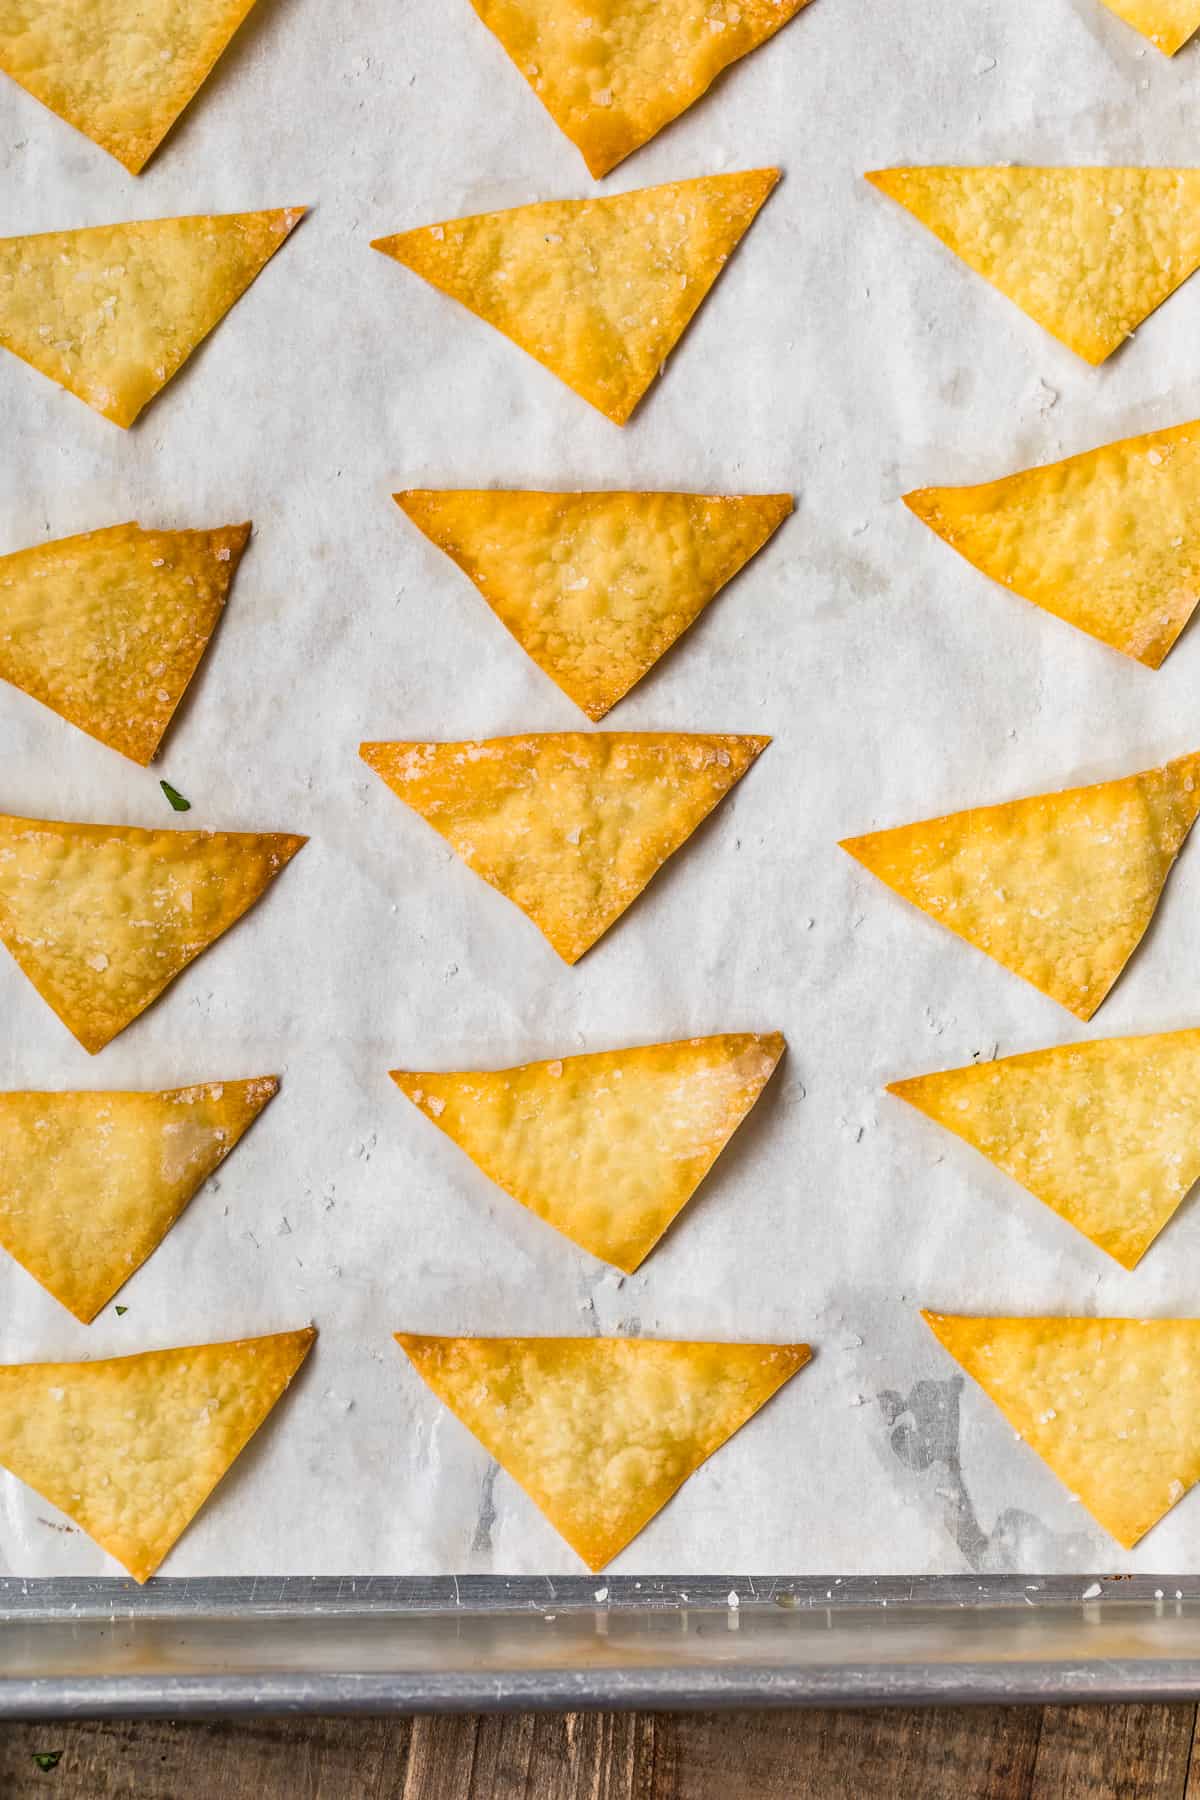 Wonton chips on a baking sheet